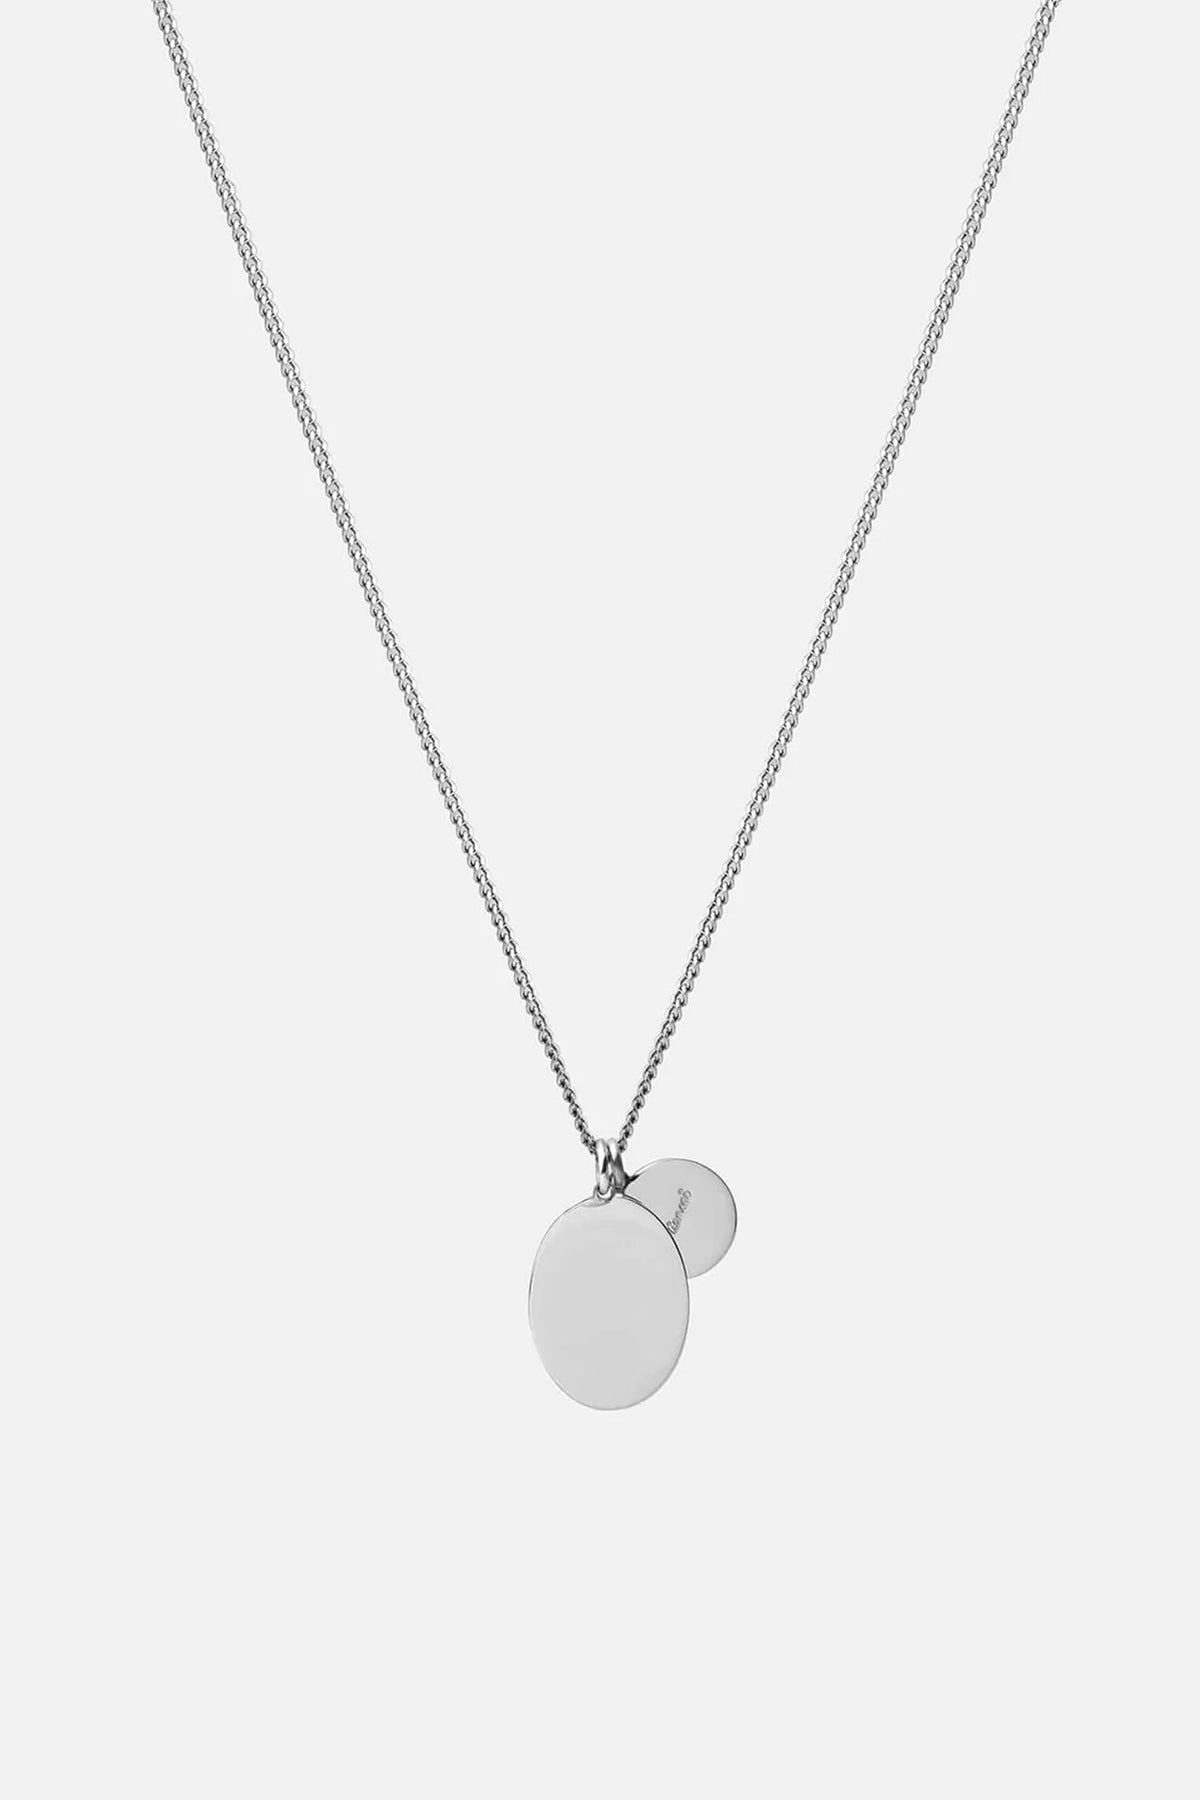 Miansai Mini Dove Pendant Necklace Silver/Blue